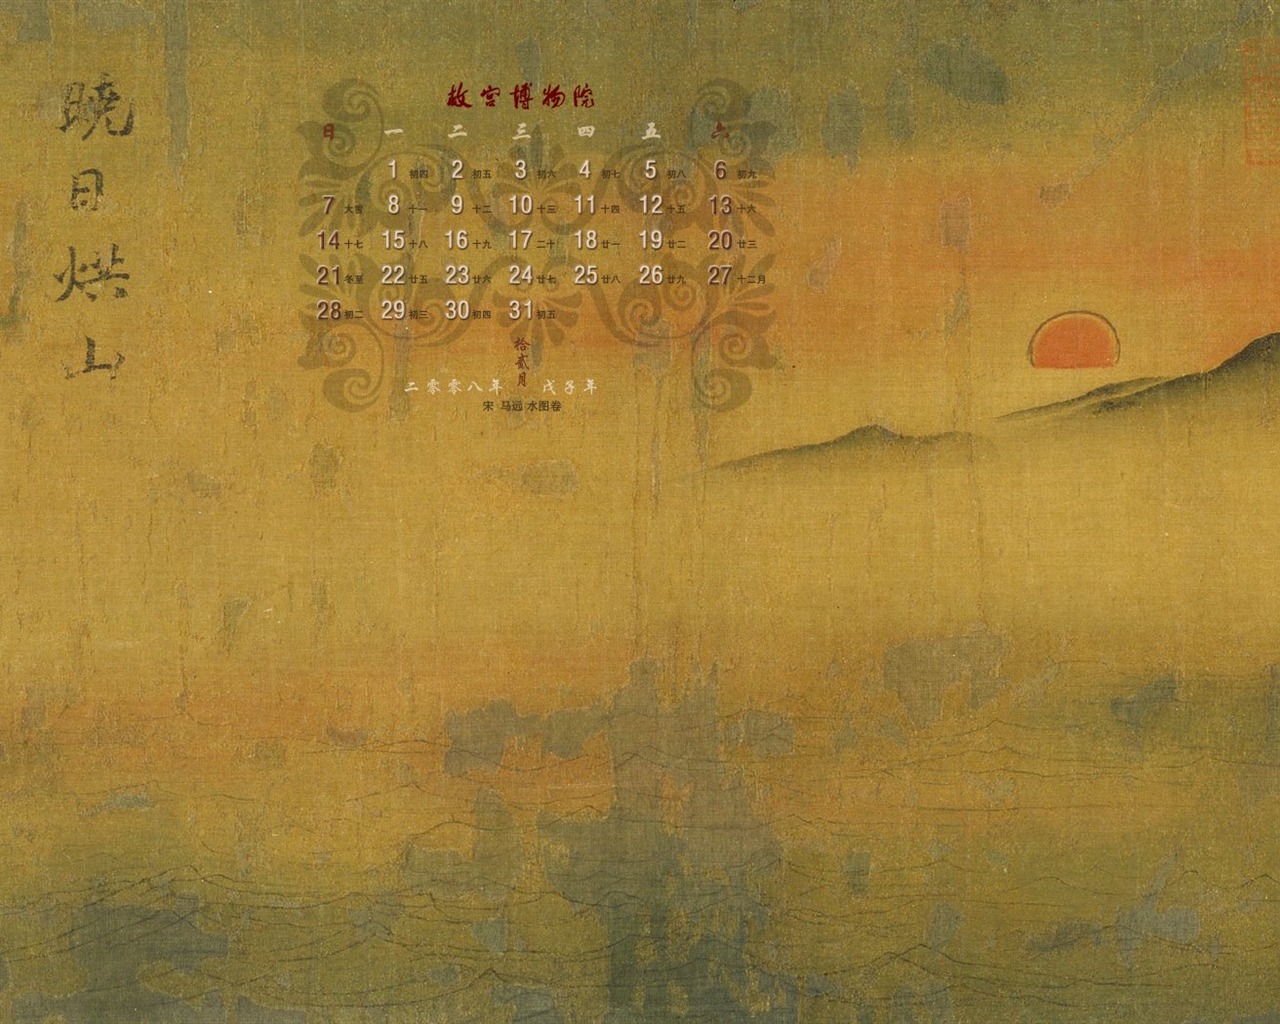 北京故宮博物院 文物展壁紙(二) #27 - 1280x1024